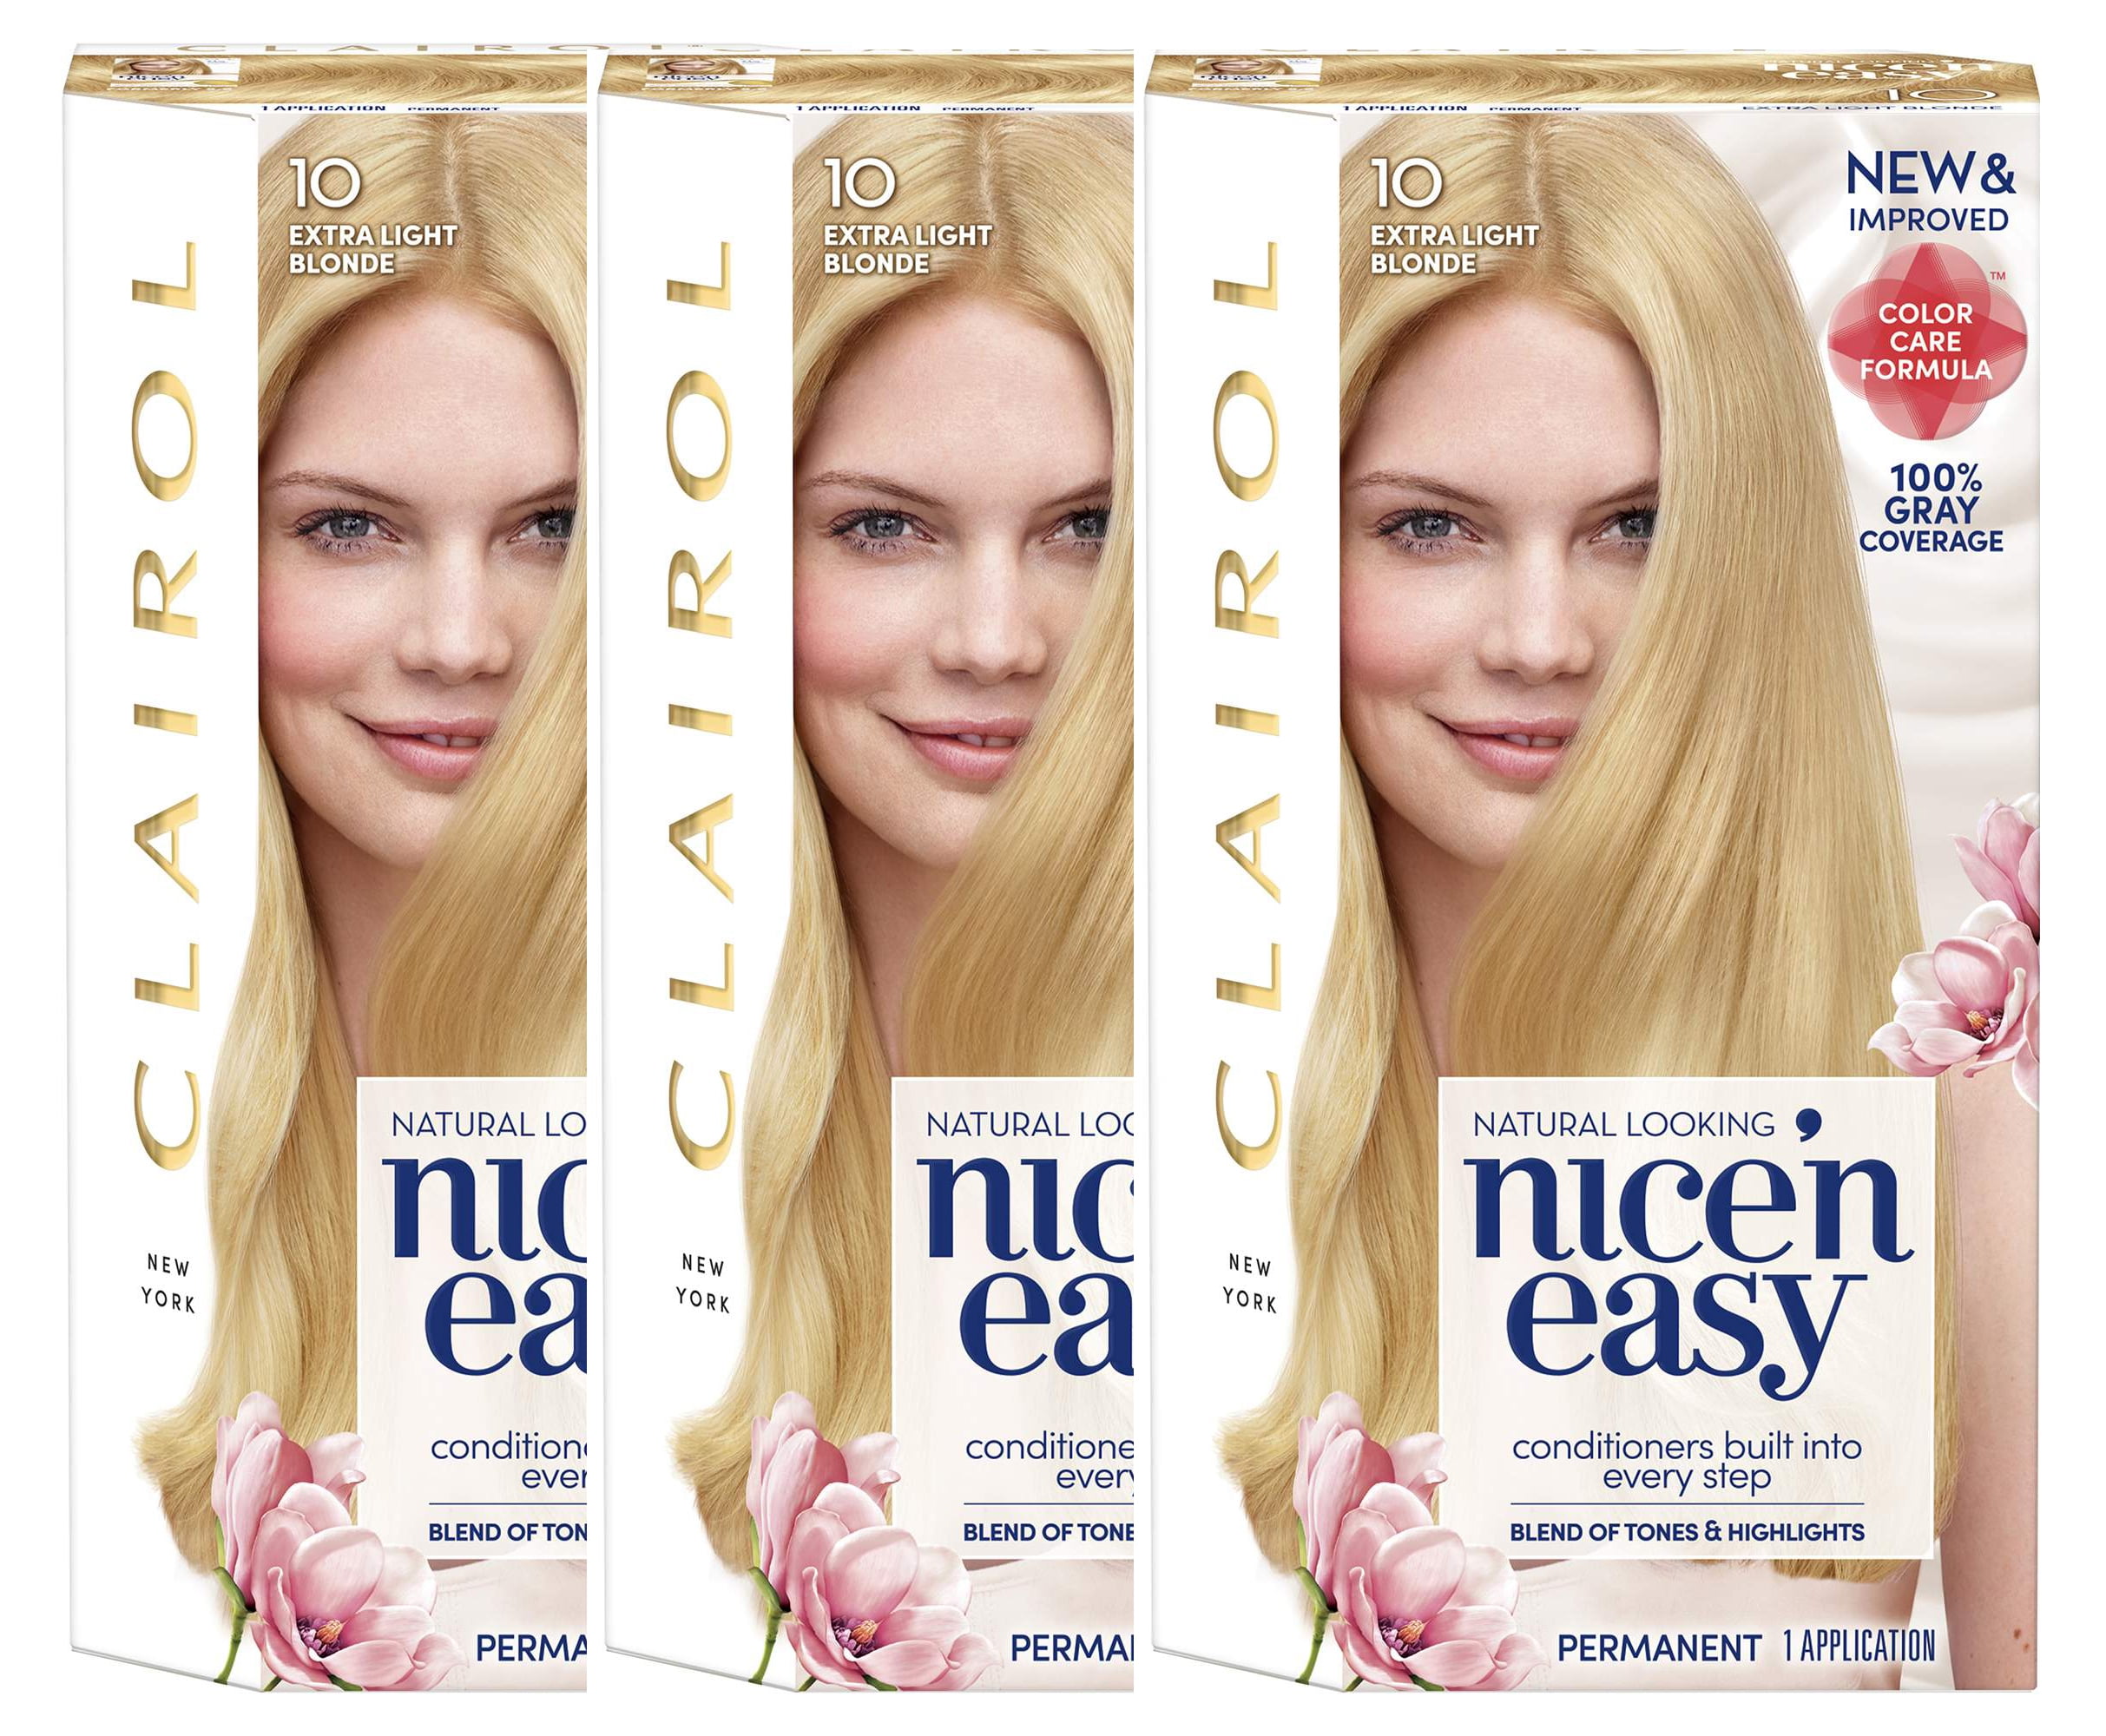 3. Clairol Nice'n Easy Permanent Hair Color, 7 Dark Blonde - wide 2